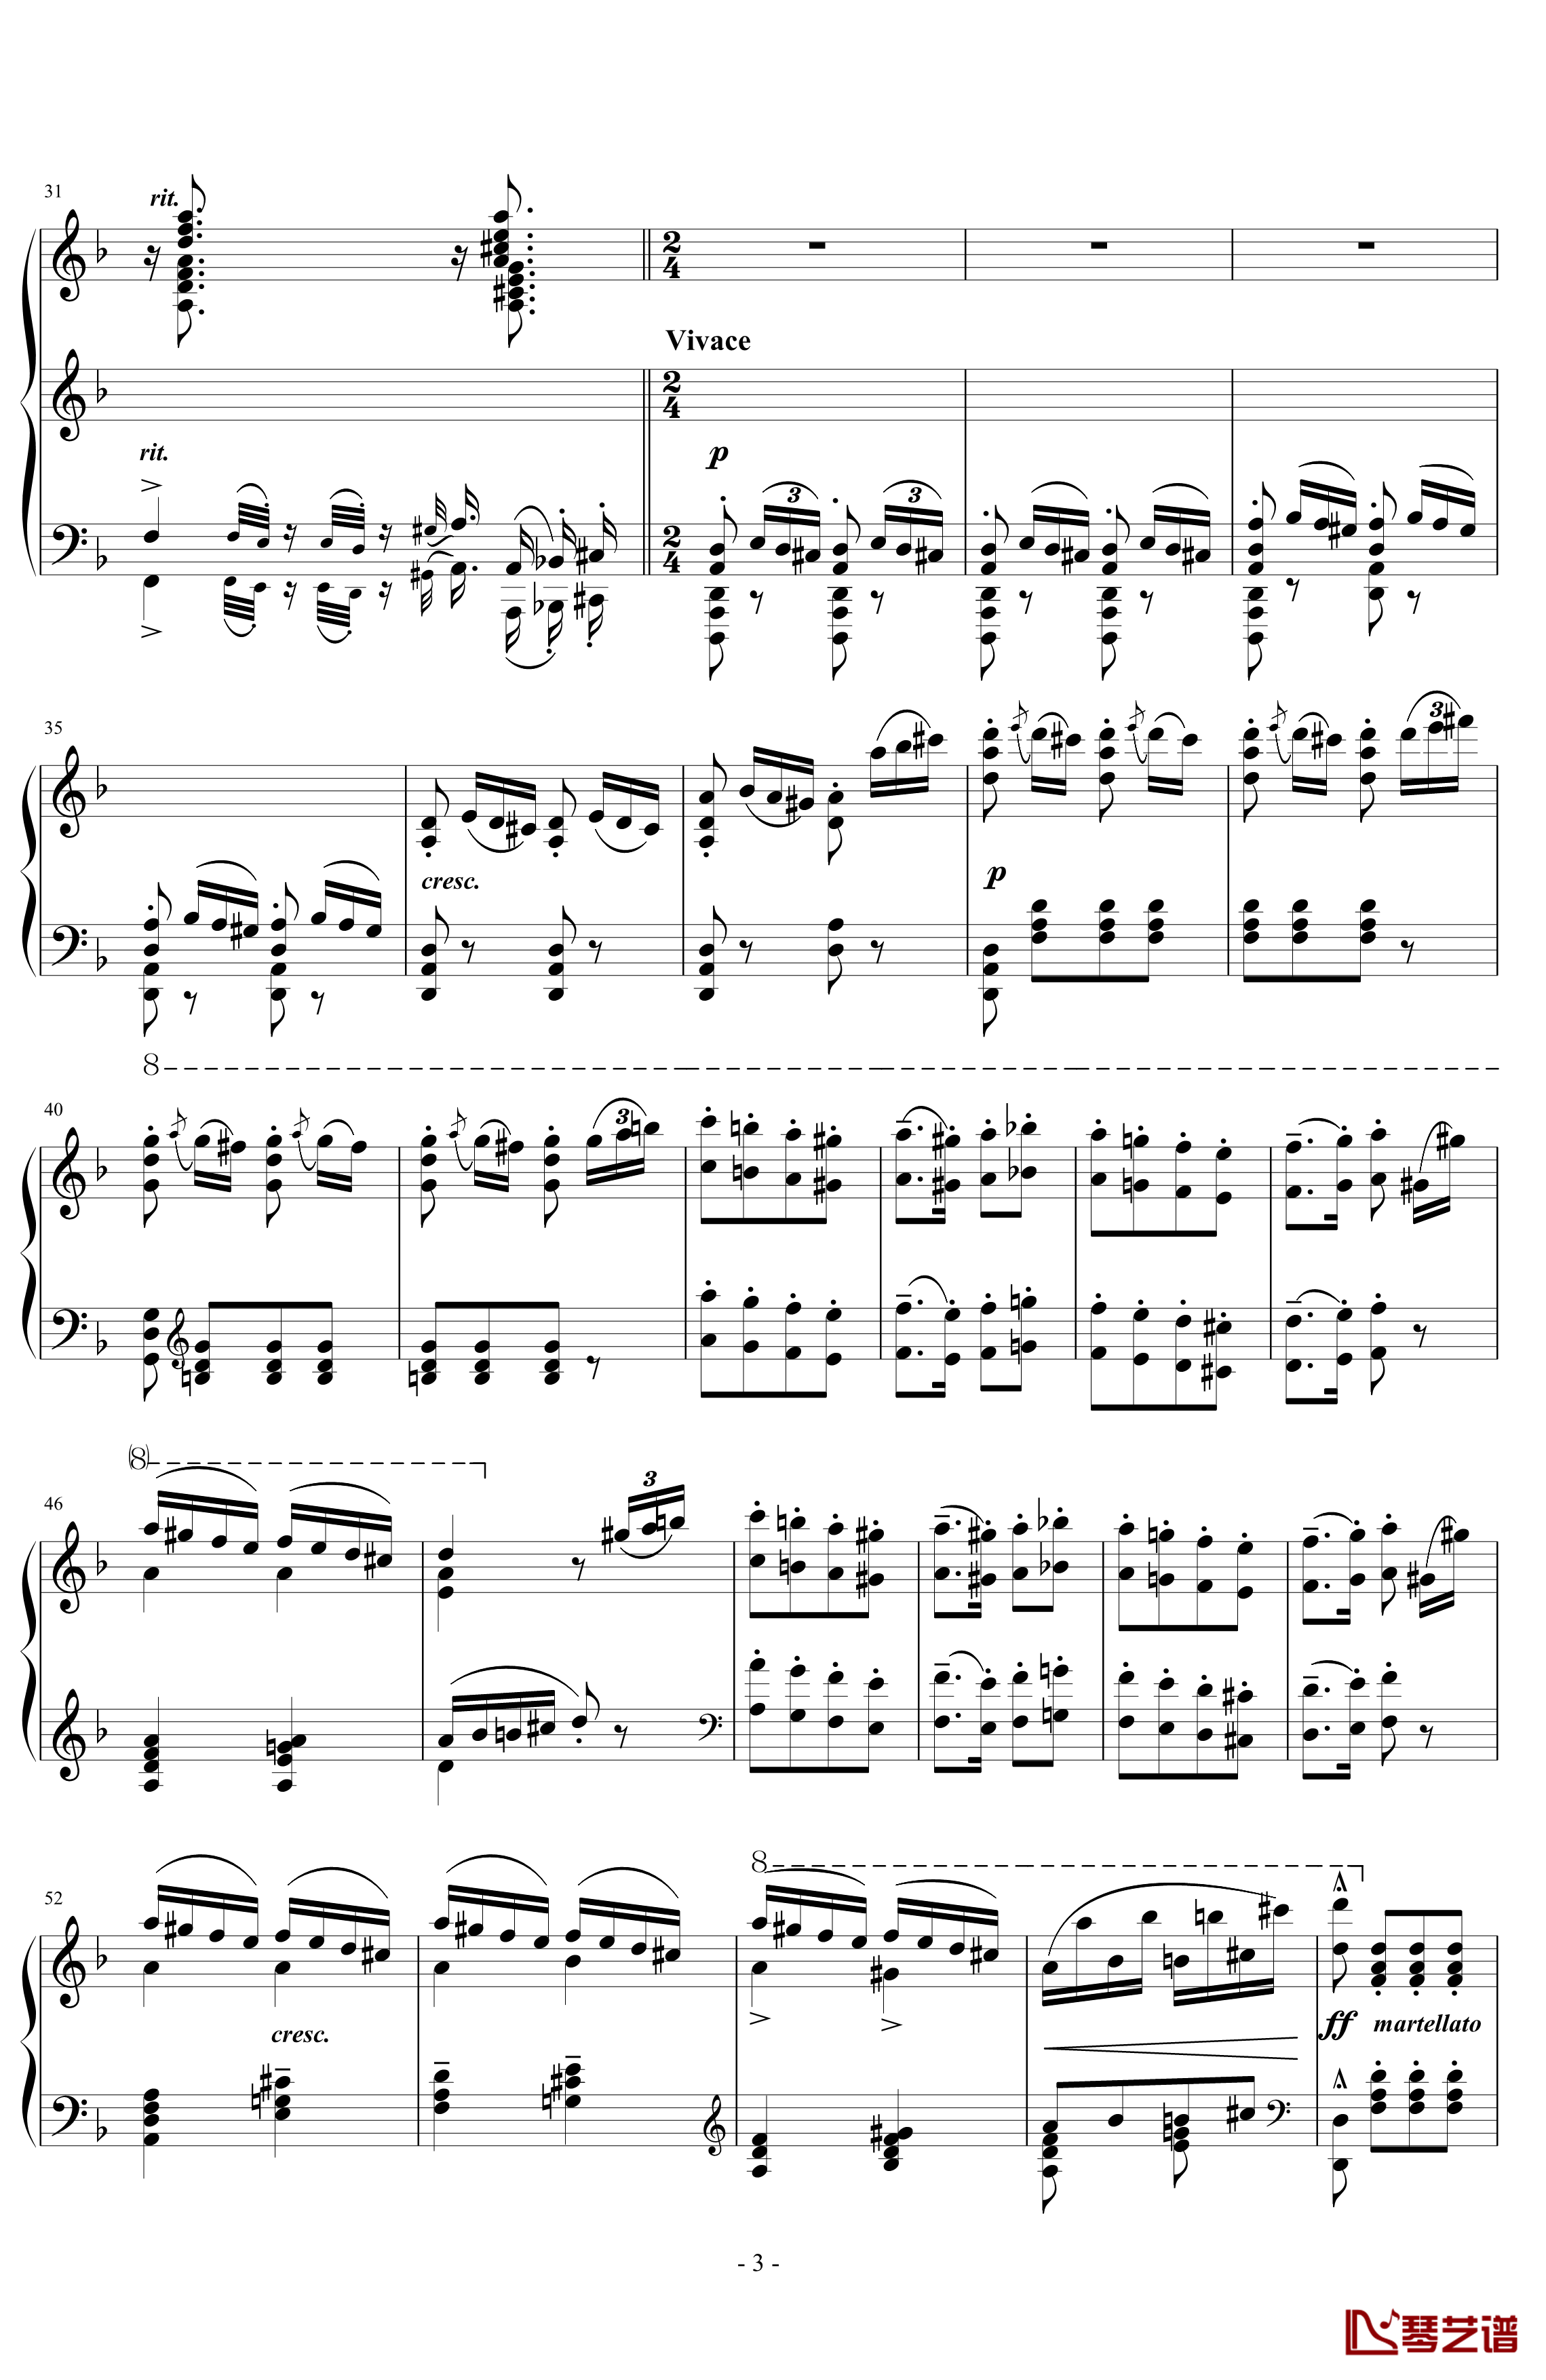 匈牙利狂想曲第7号钢琴谱-一首欢快活泼的舞曲-李斯特3